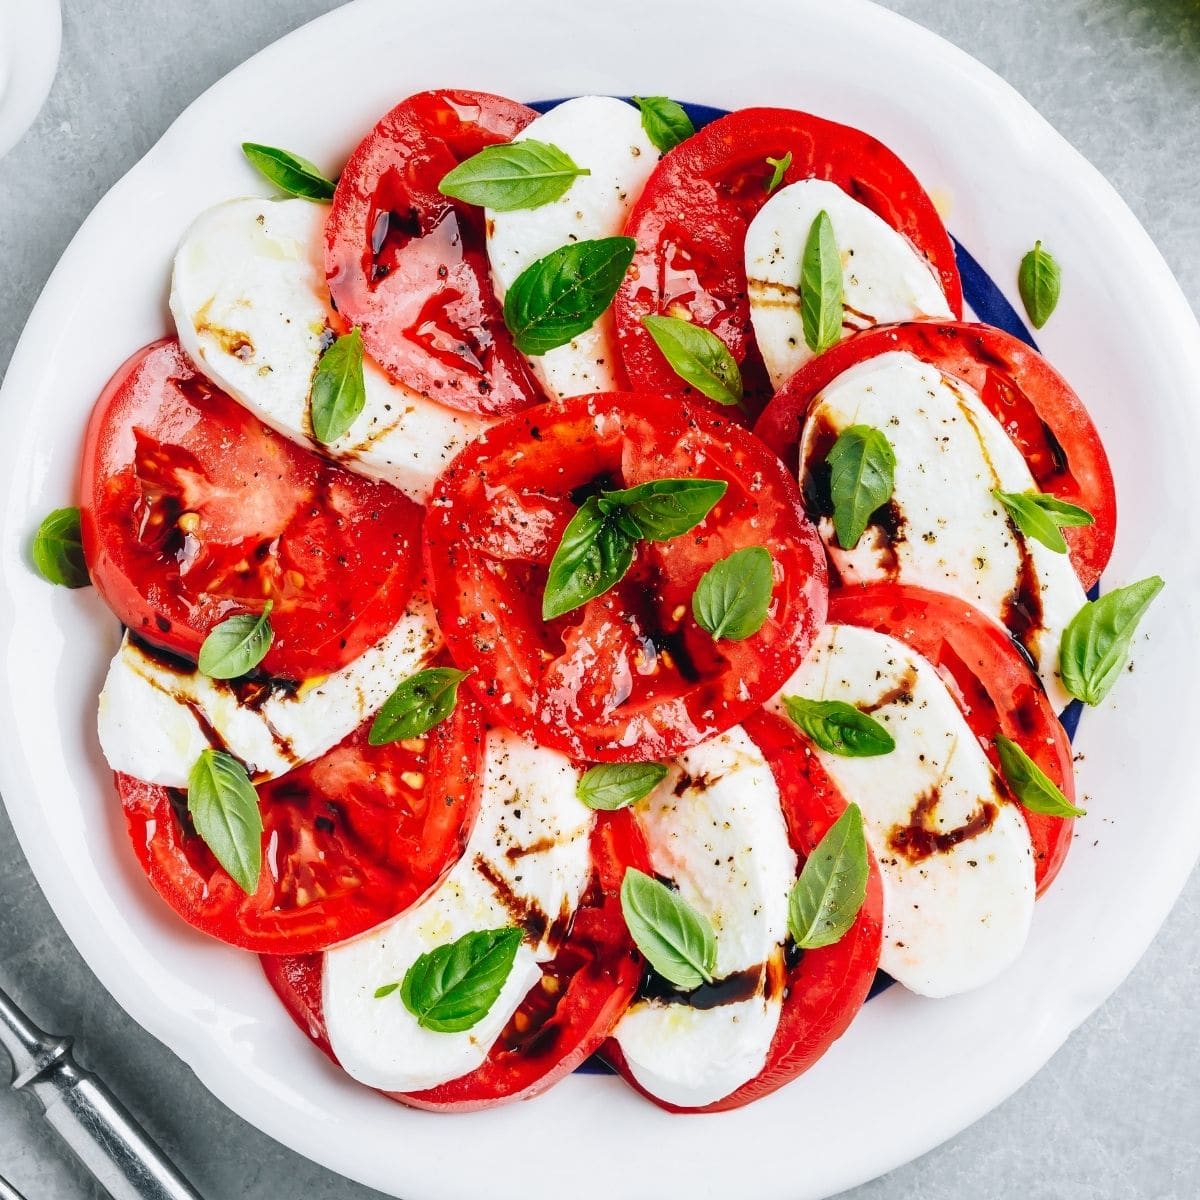 Najbolja caprese salata poslužena dok su rajčice, mozzarella i bosiljak svježi i živahni.